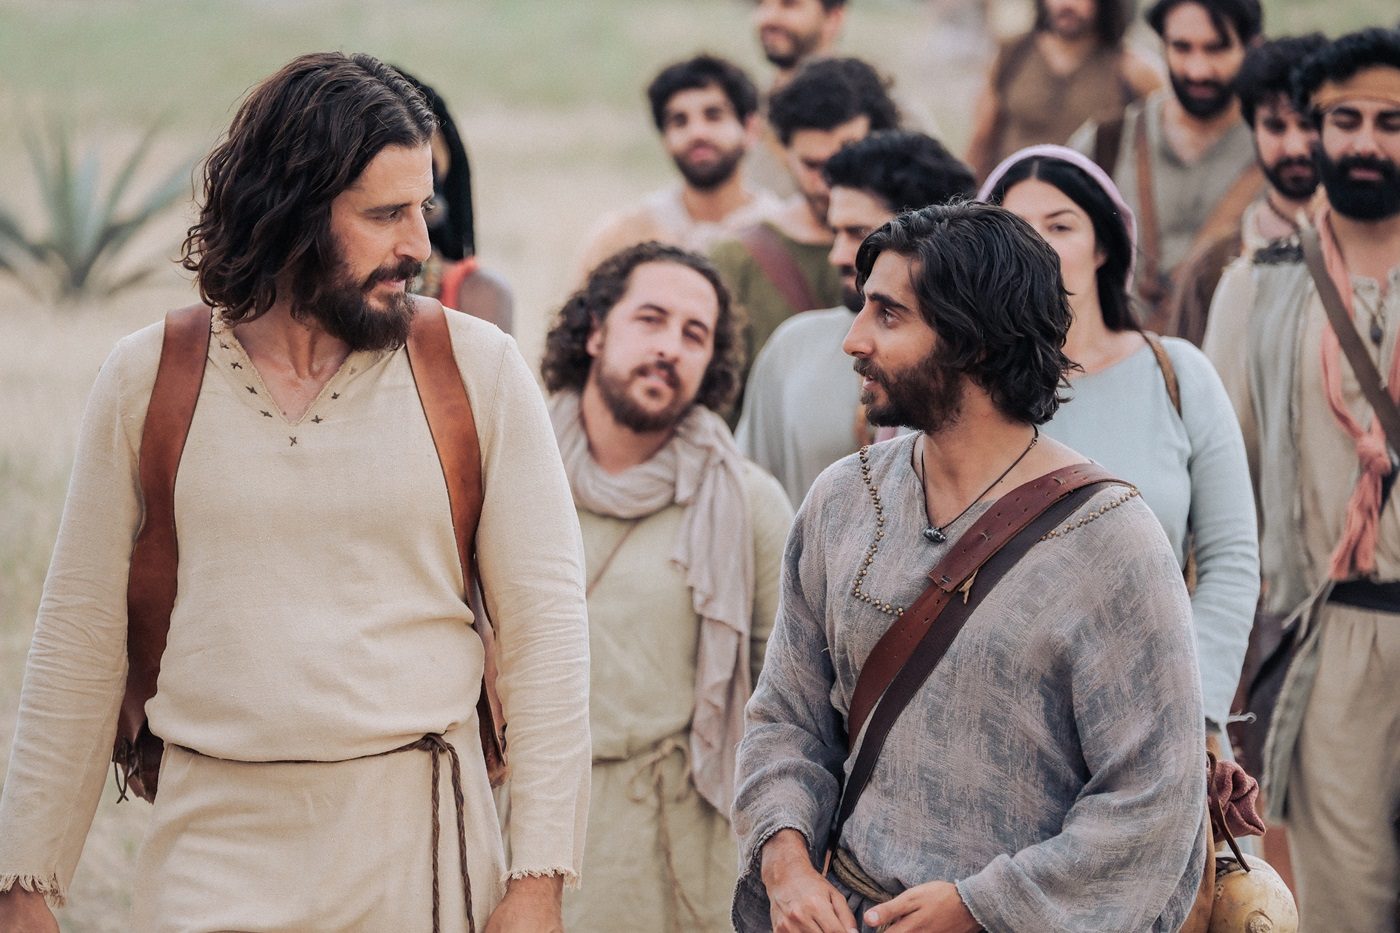 Image tirée de la saison 4 de la saison The Chosen. On y voit Jonathan Roumie (dans le rôle de Jésus) discuter tout en marchant avec ses apôtres